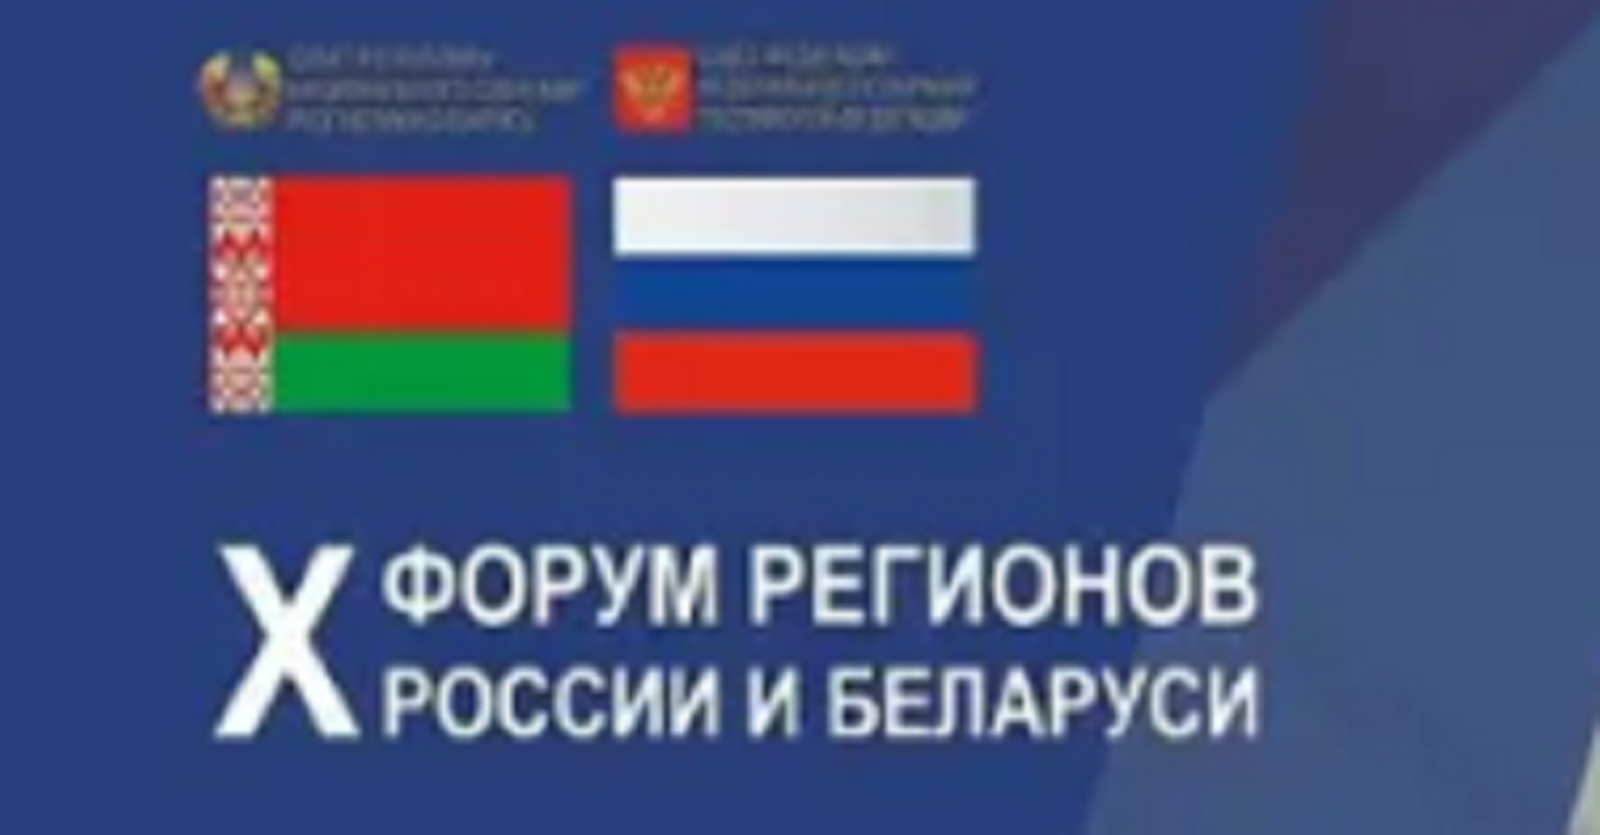 В Уфе состоится Форум регионов России и Беларус